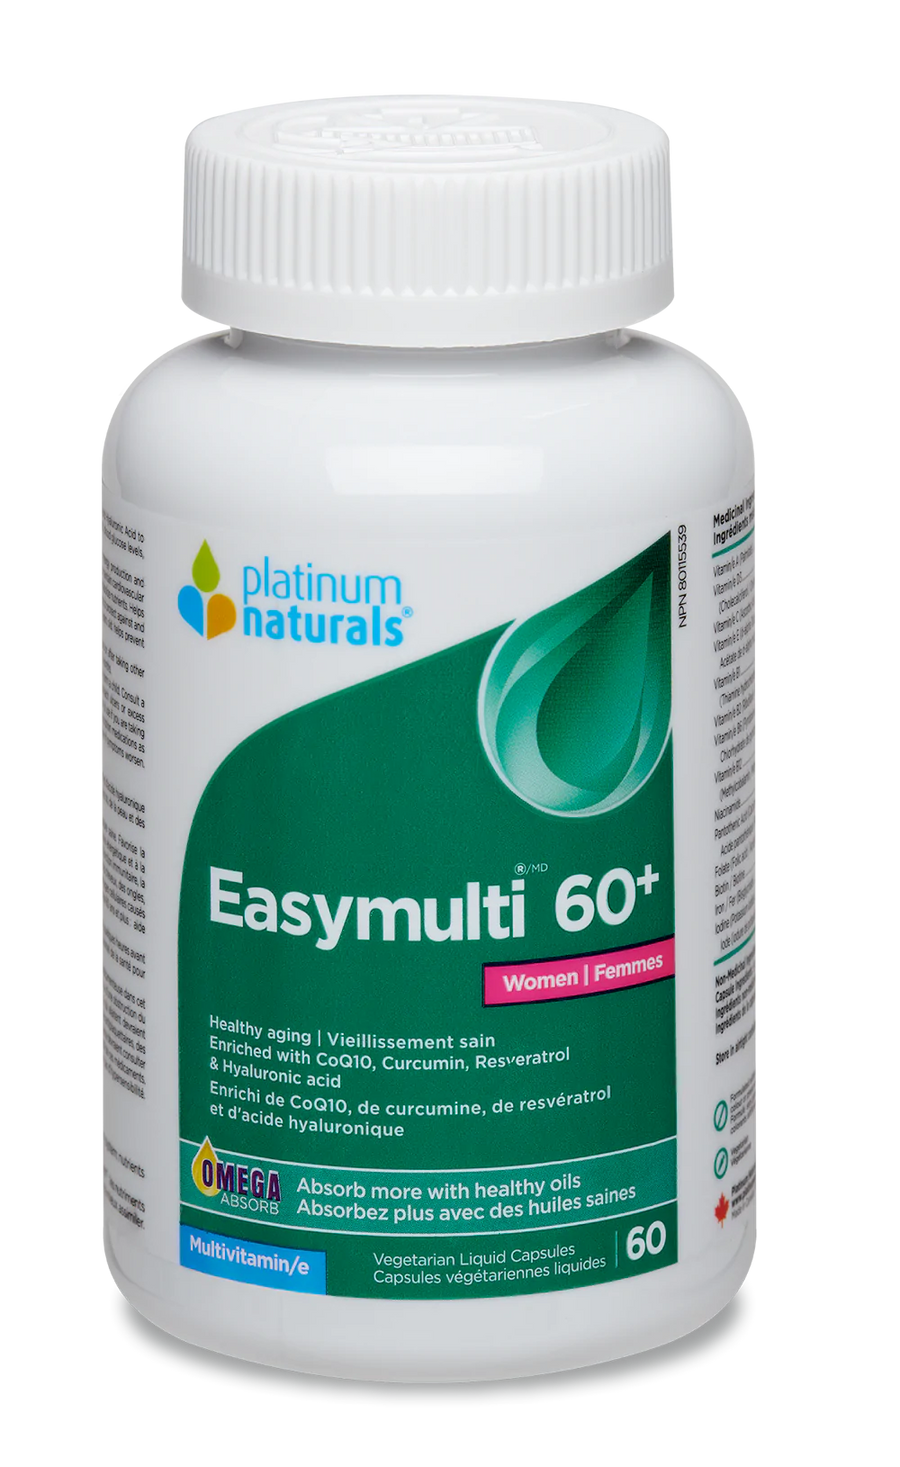 Platinum Naturals Easymulti 60+ for Women Veg. Liquid Capsules